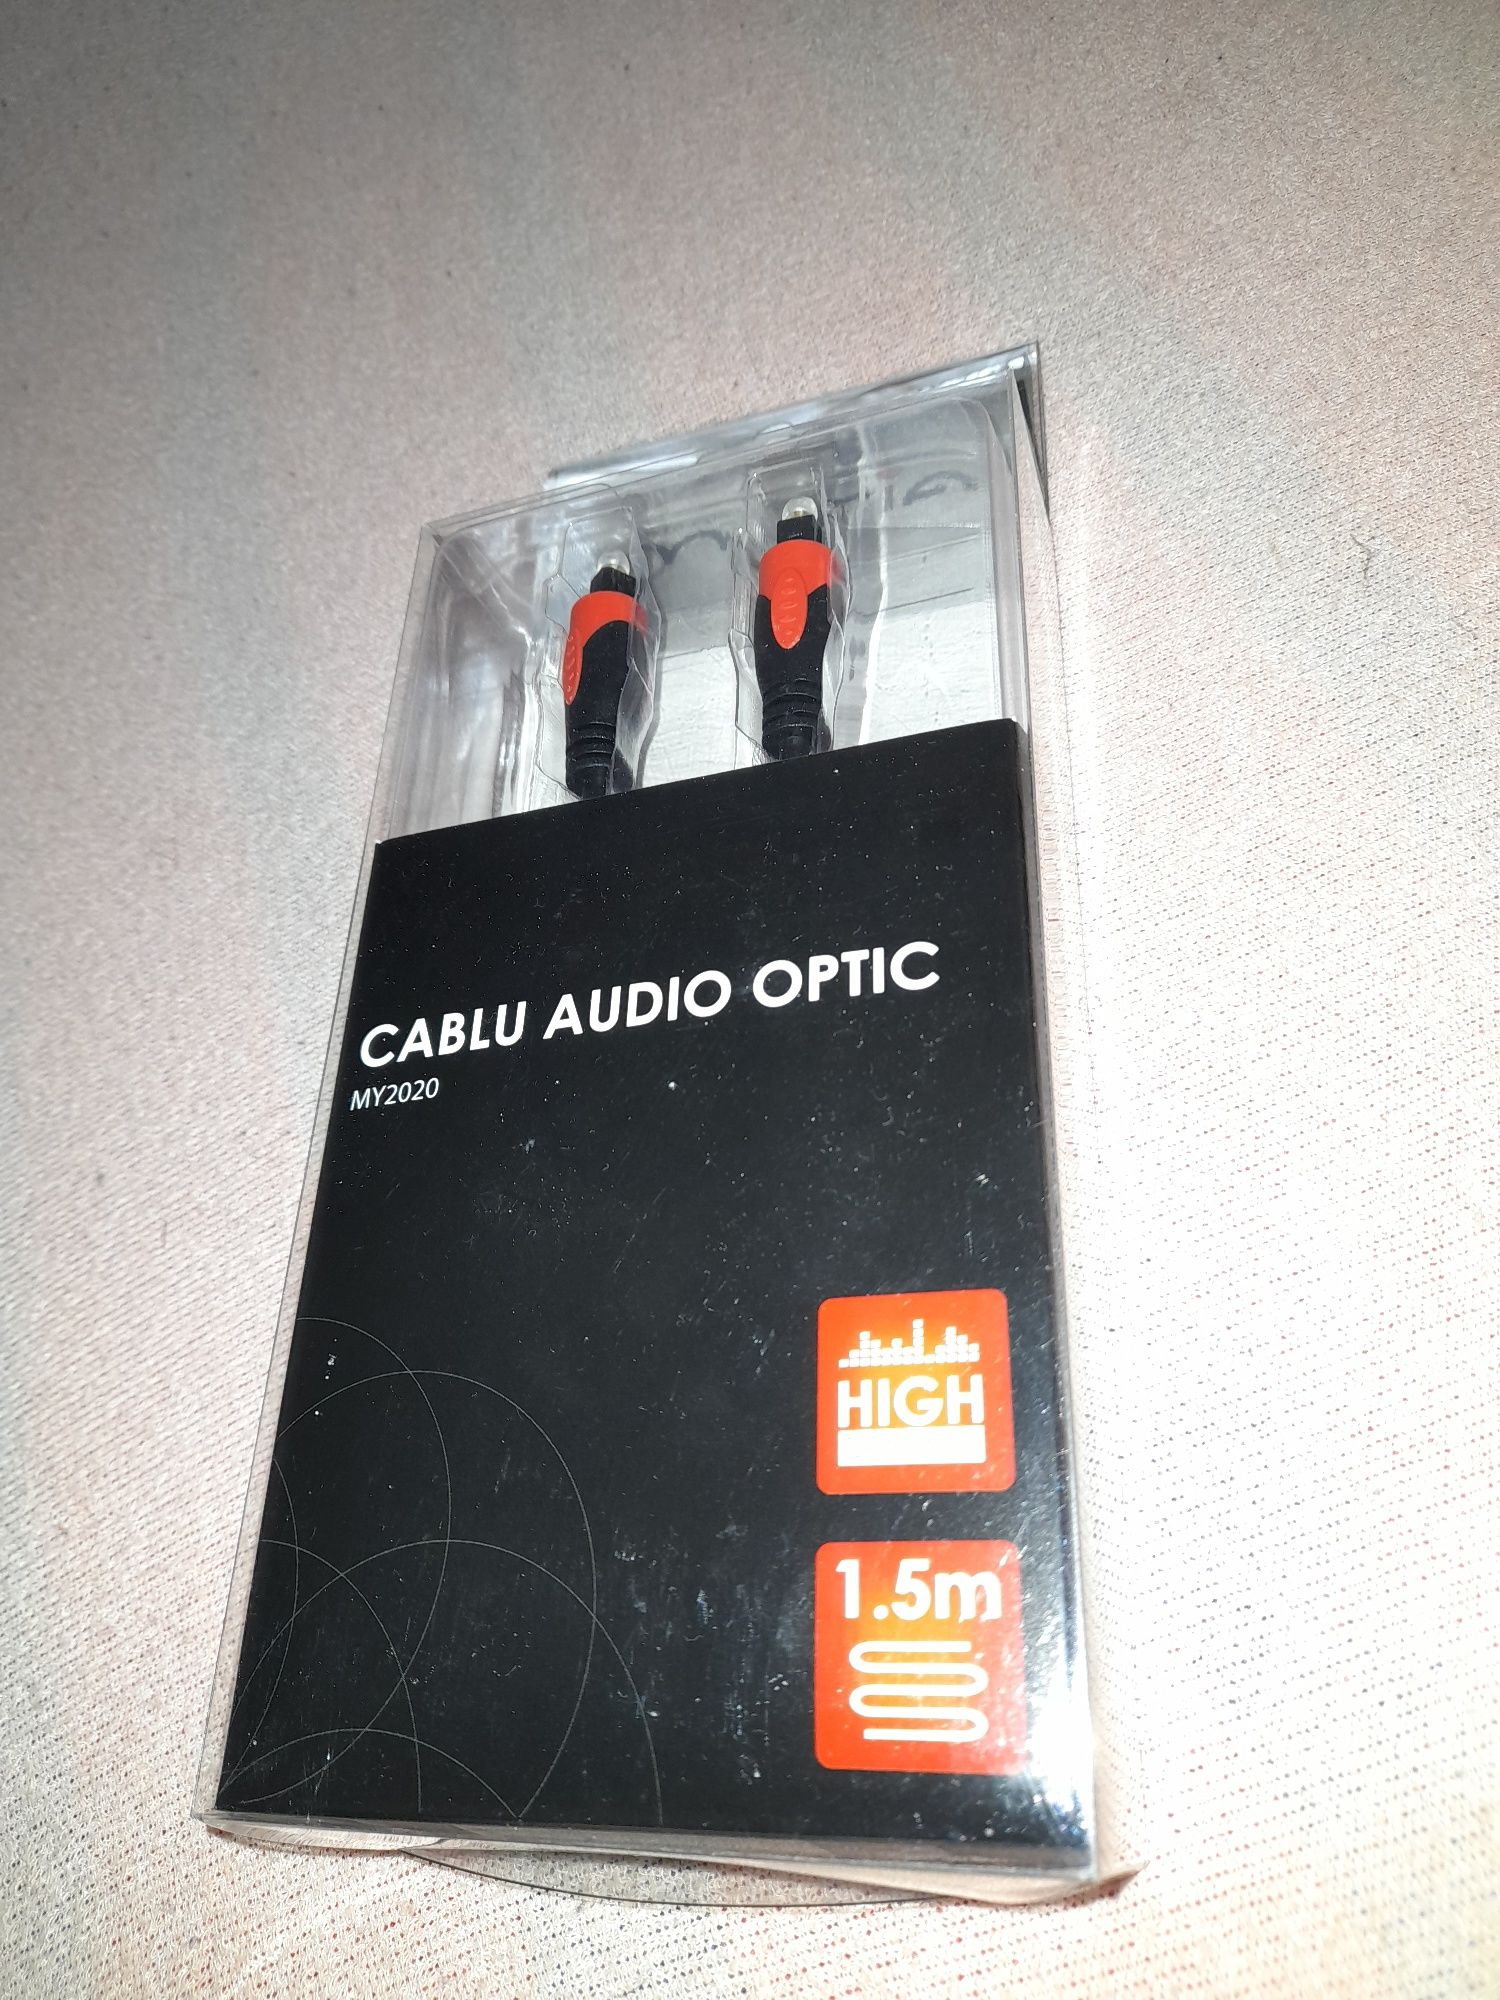 Cablu audio optic